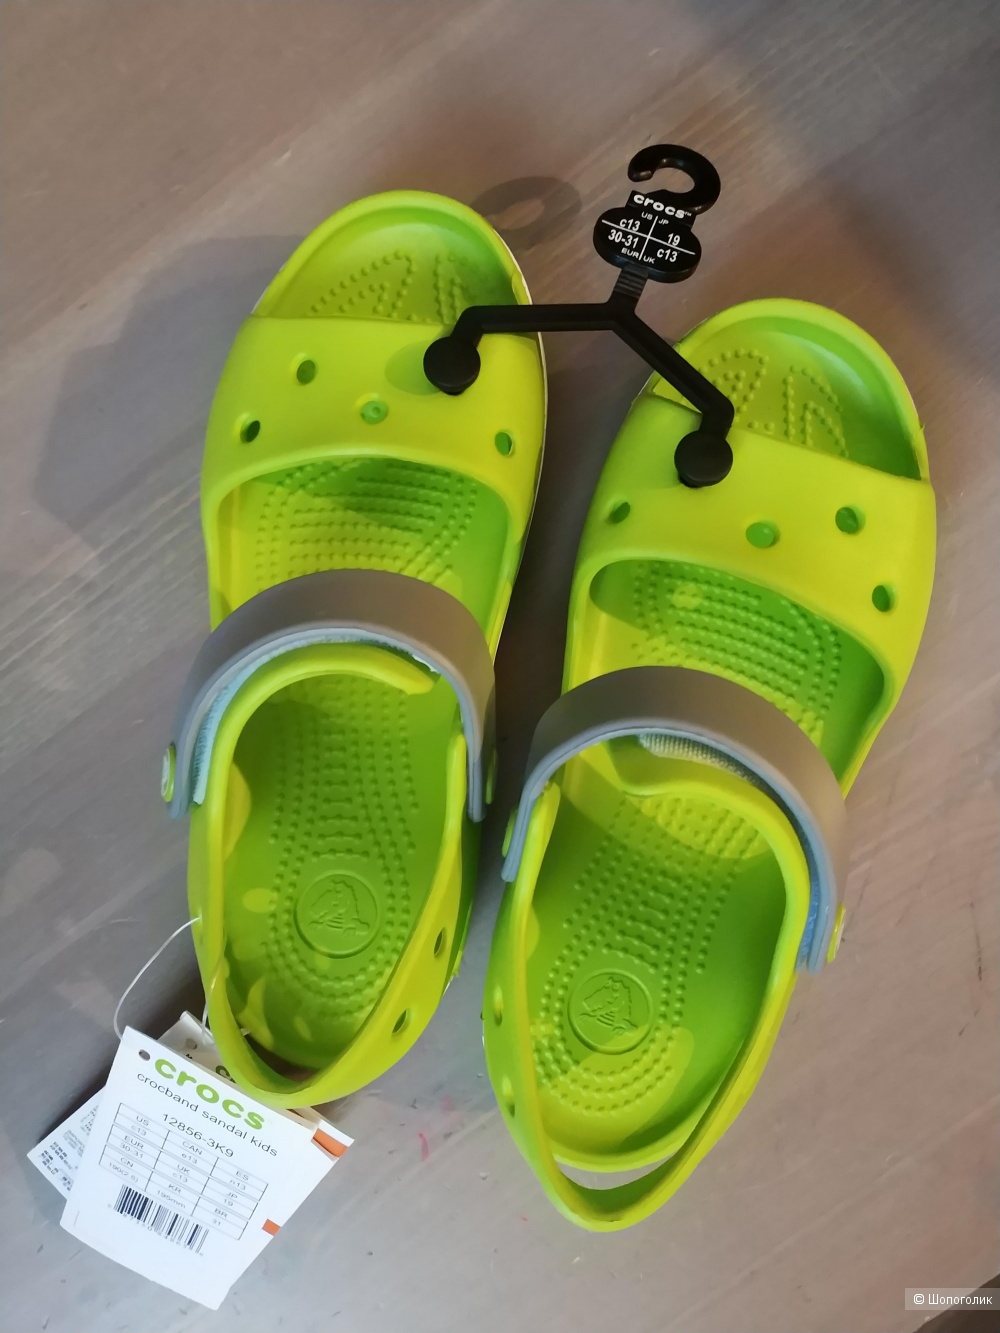 Crocs сандалии размер C13 на 30-31